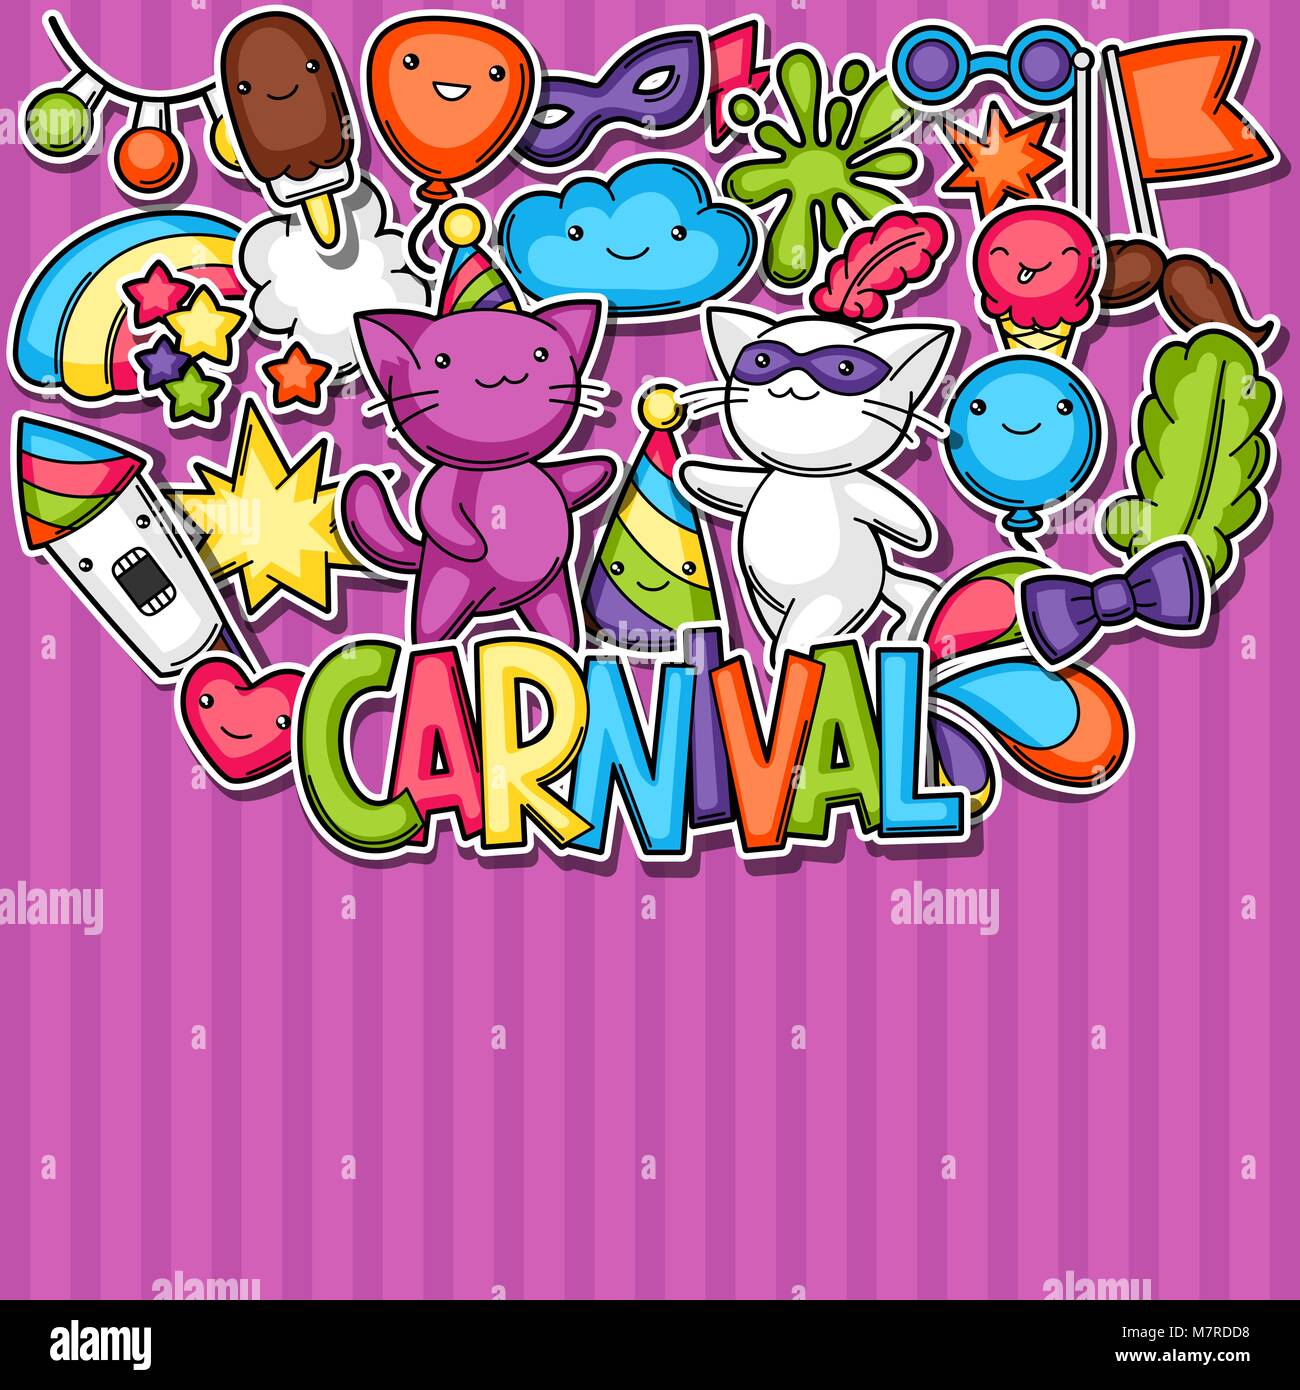 Karneval Party kawaii Hintergrund. Süße Aufkleber Katzen, Dekorationen für Feiern, Objekte und Symbole Stock Vektor